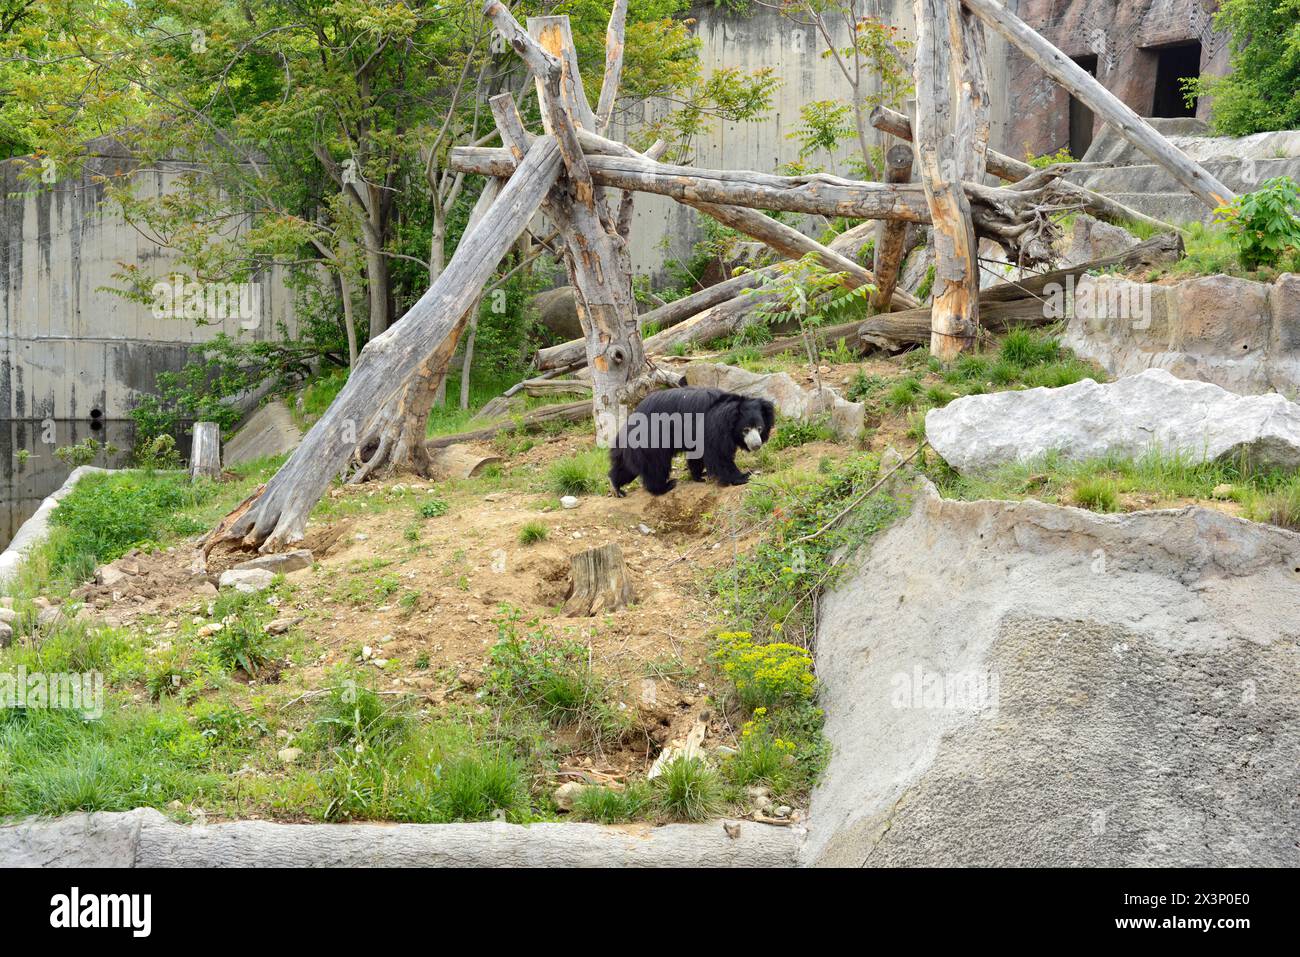 Faulbär Melursus ursinus oder indischer Bär in seinem Gefangenengehege im Zoo von Sofia, Sofia Bulgarien, Osteuropa, Balkan, EU Stockfoto